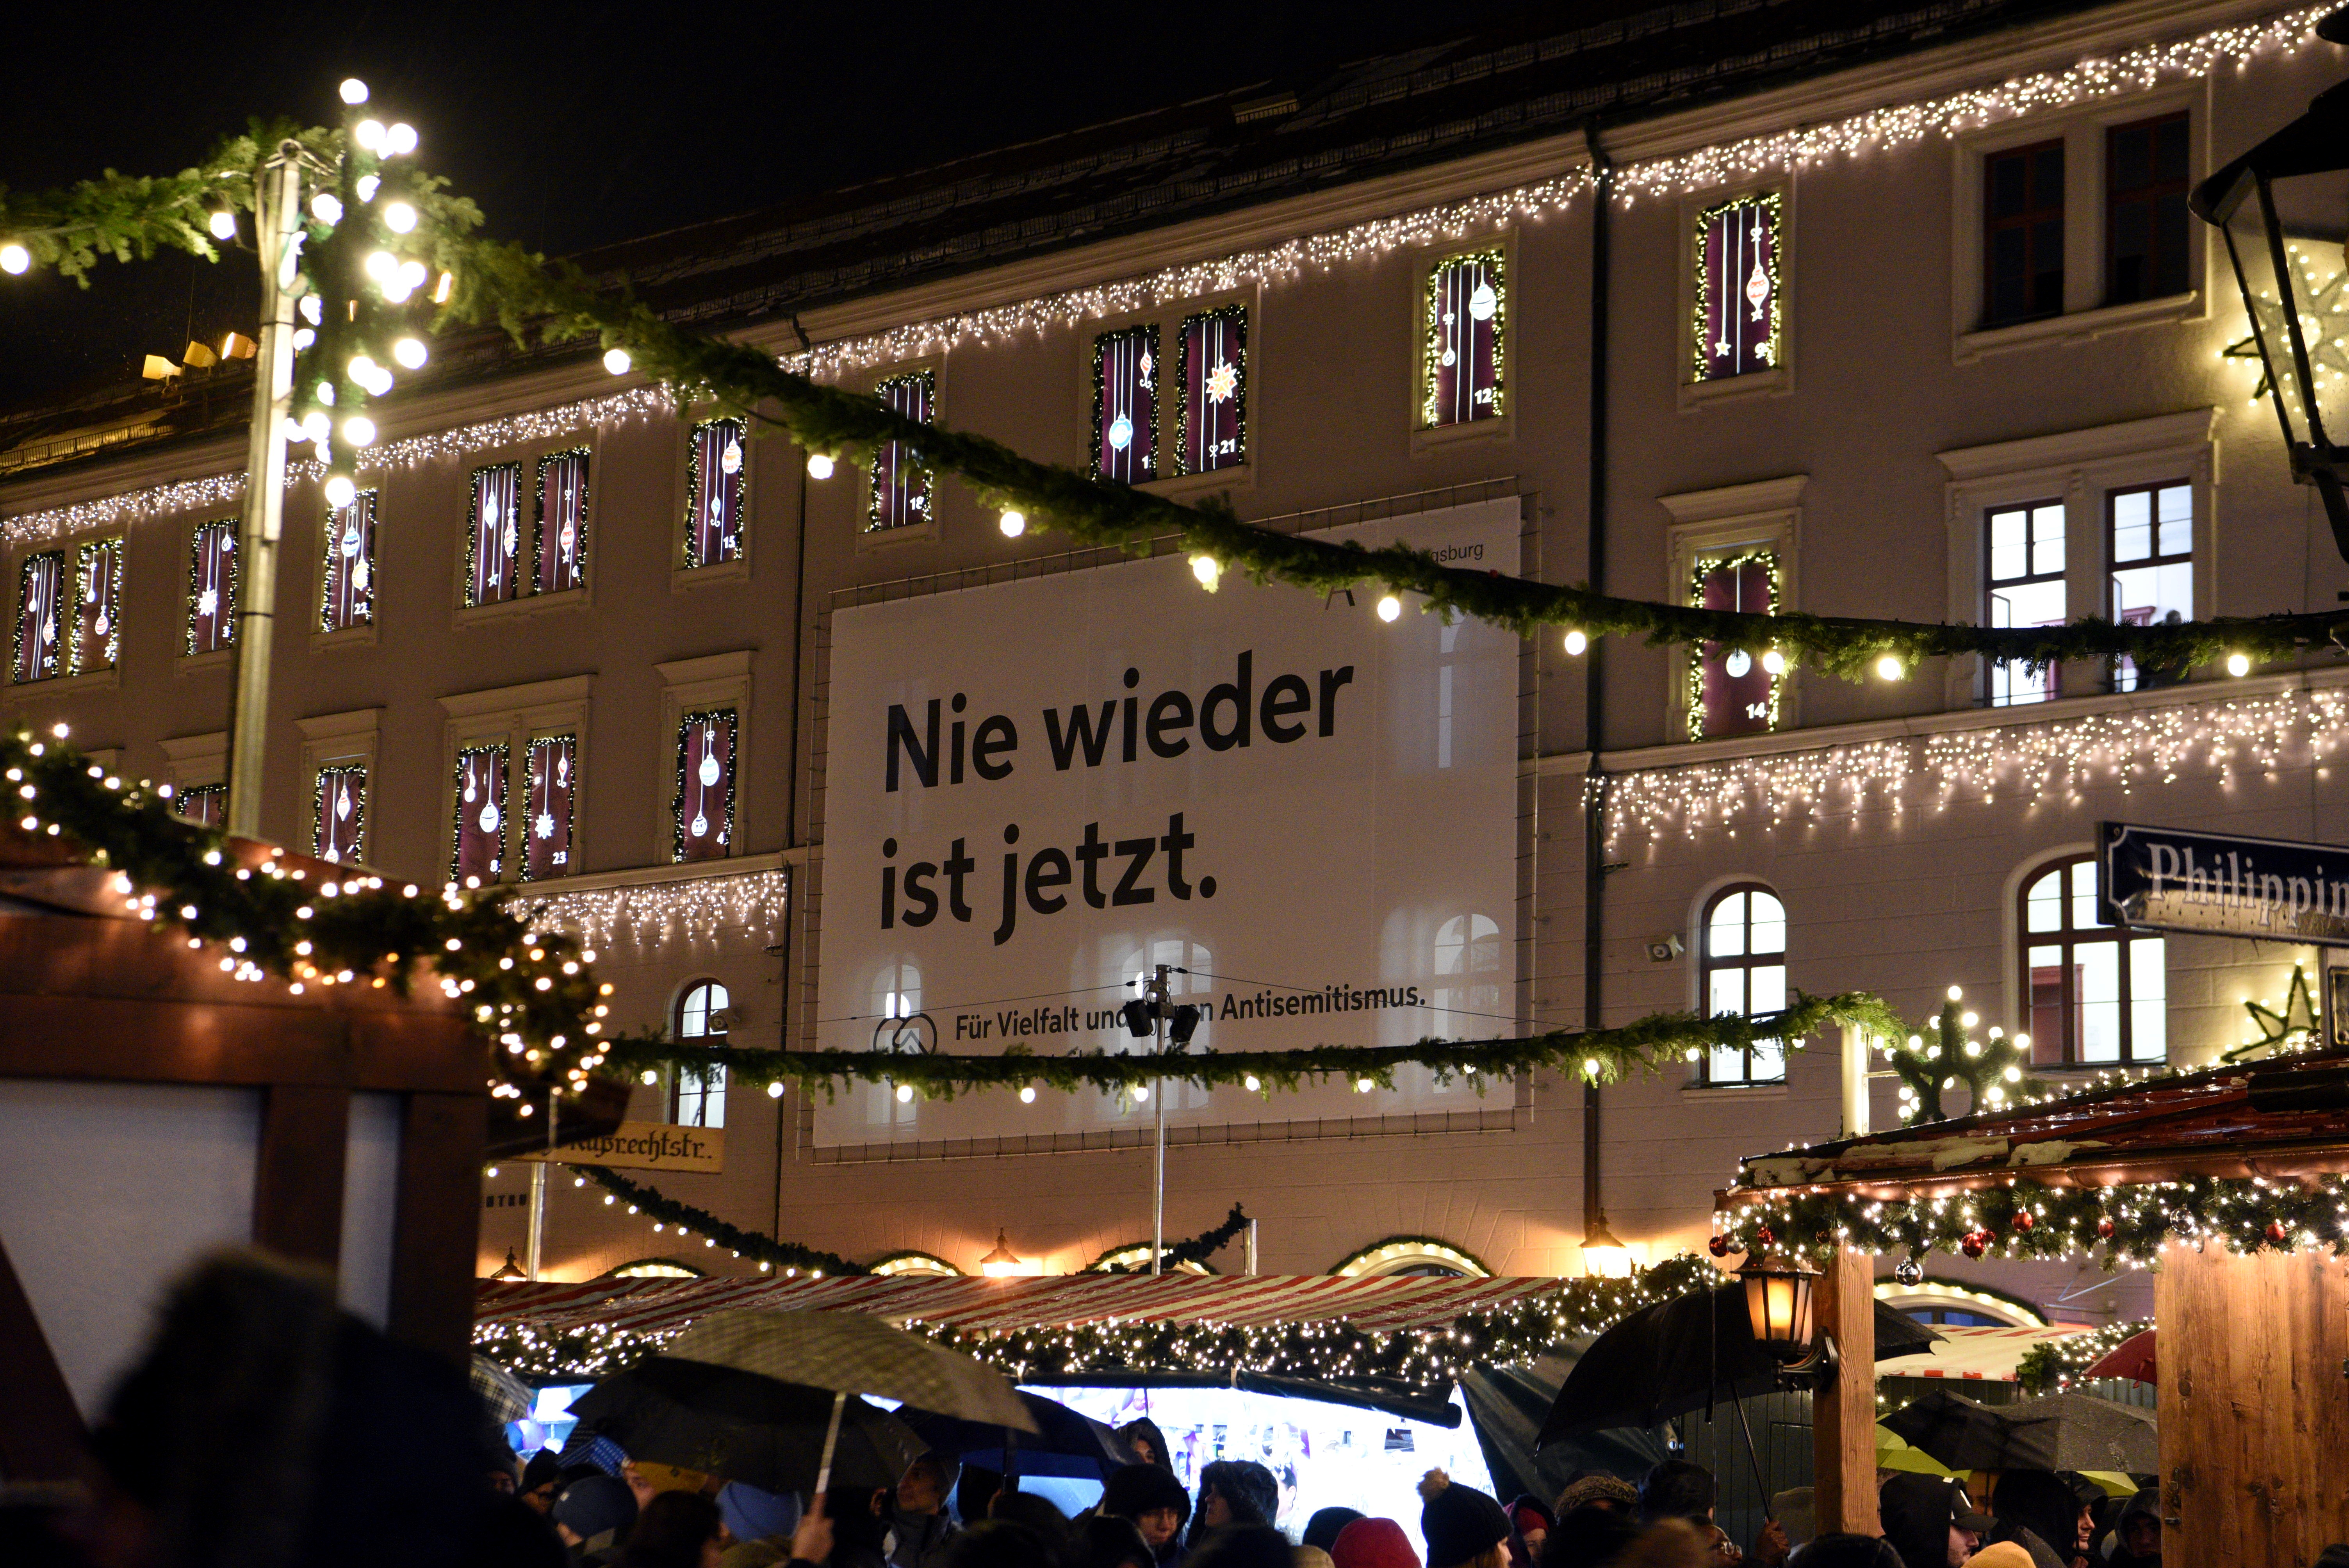 Der Banner mit dem Text "Nie wieder ist jetzt" am Verwaltungsgebäude 1 auf dem Rathausplatz zwischen dem Adventskalender in den Fenstern des Gebäudes.